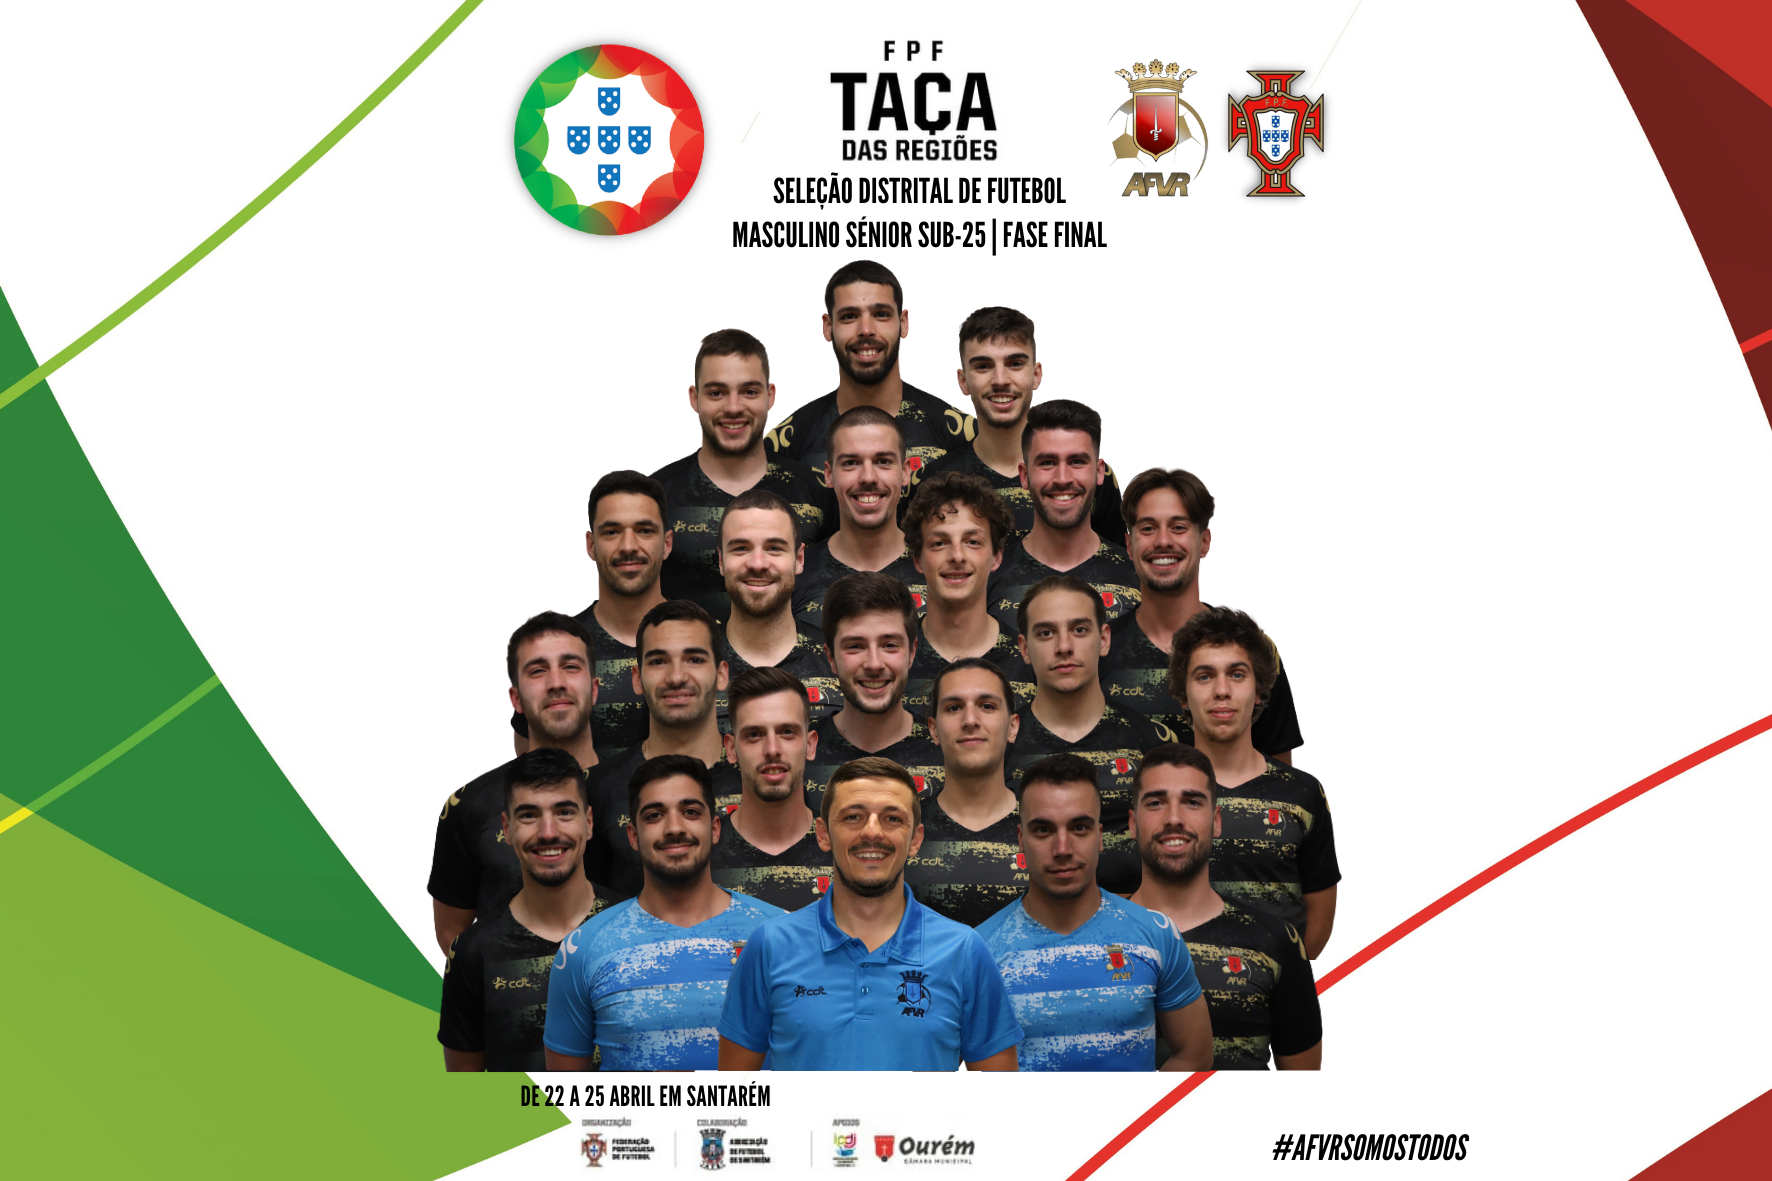 Convocatória para a Taça das Regiões | Fase Final | Seleção Distrital de Futebol Masculino Sénior Sub-25